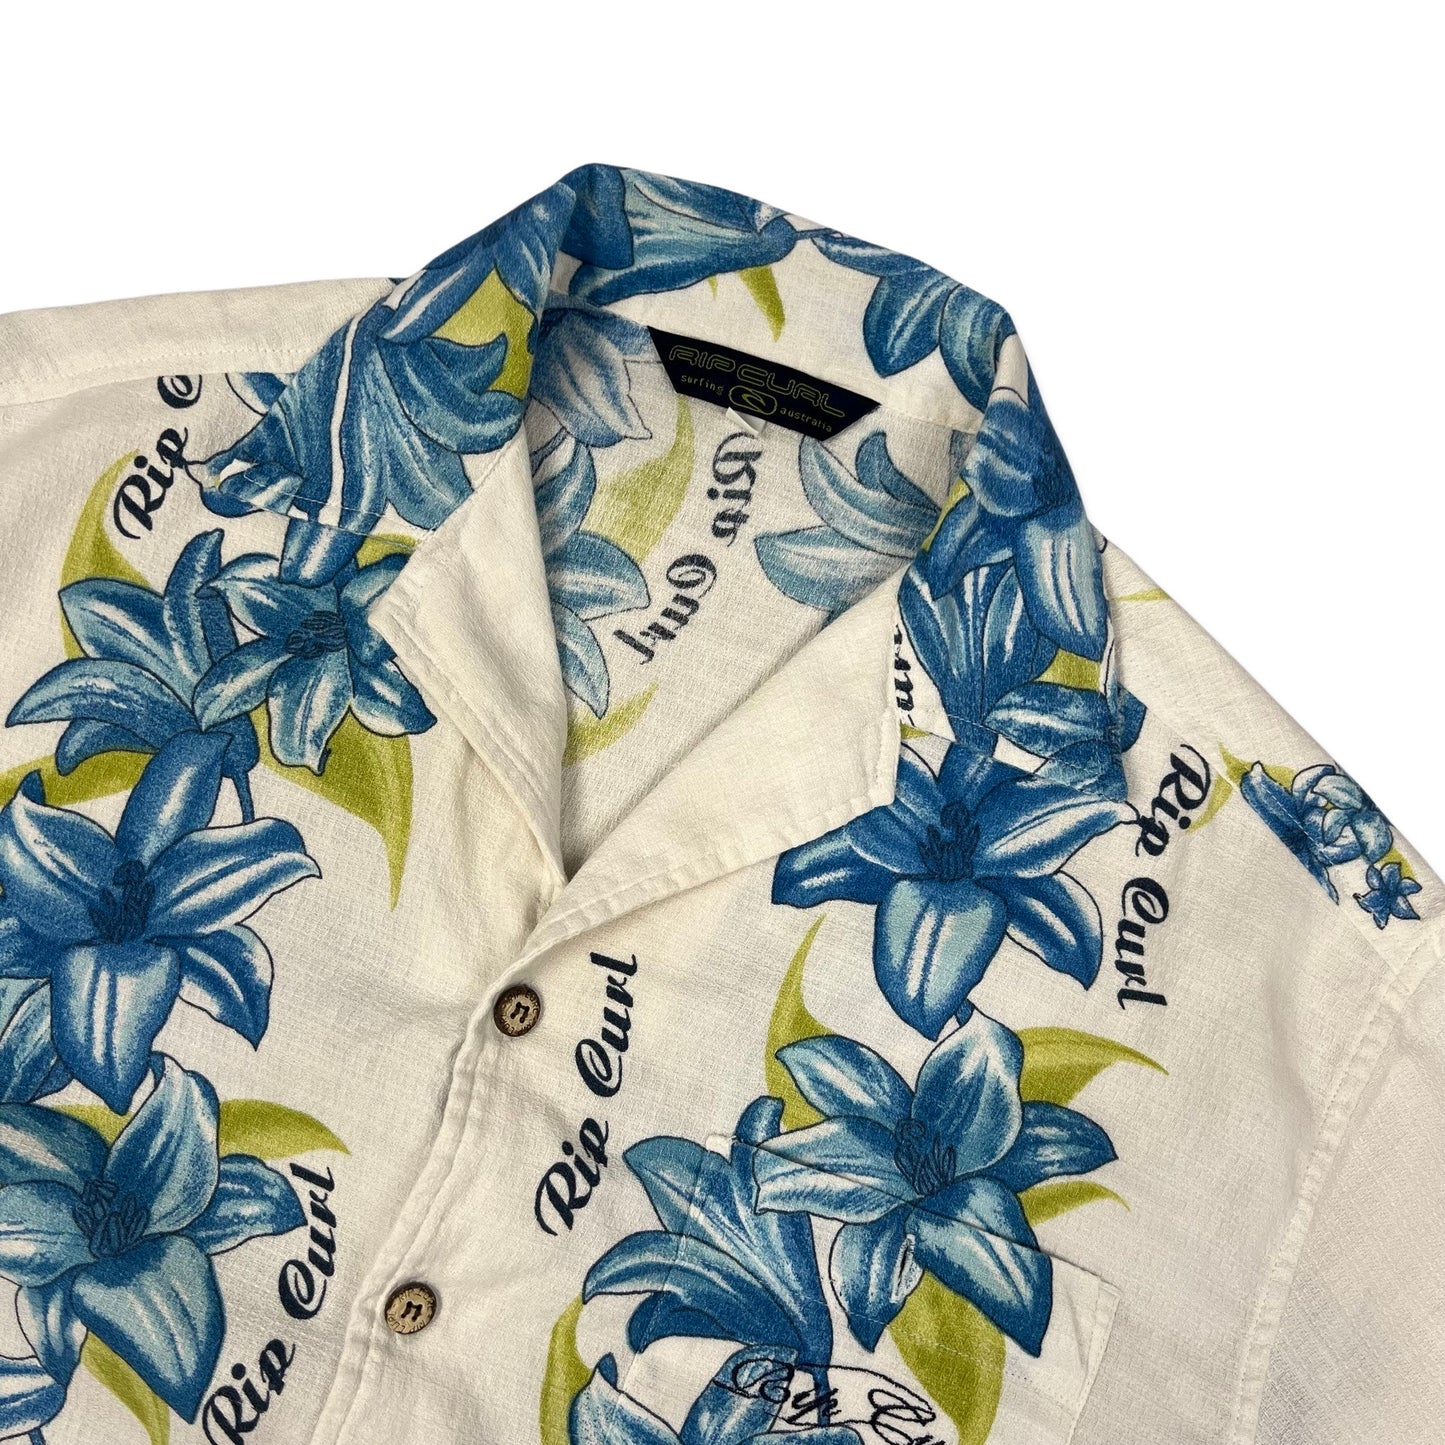 Vintage Rip Curl White & Blue Hawaiian Shirt M L